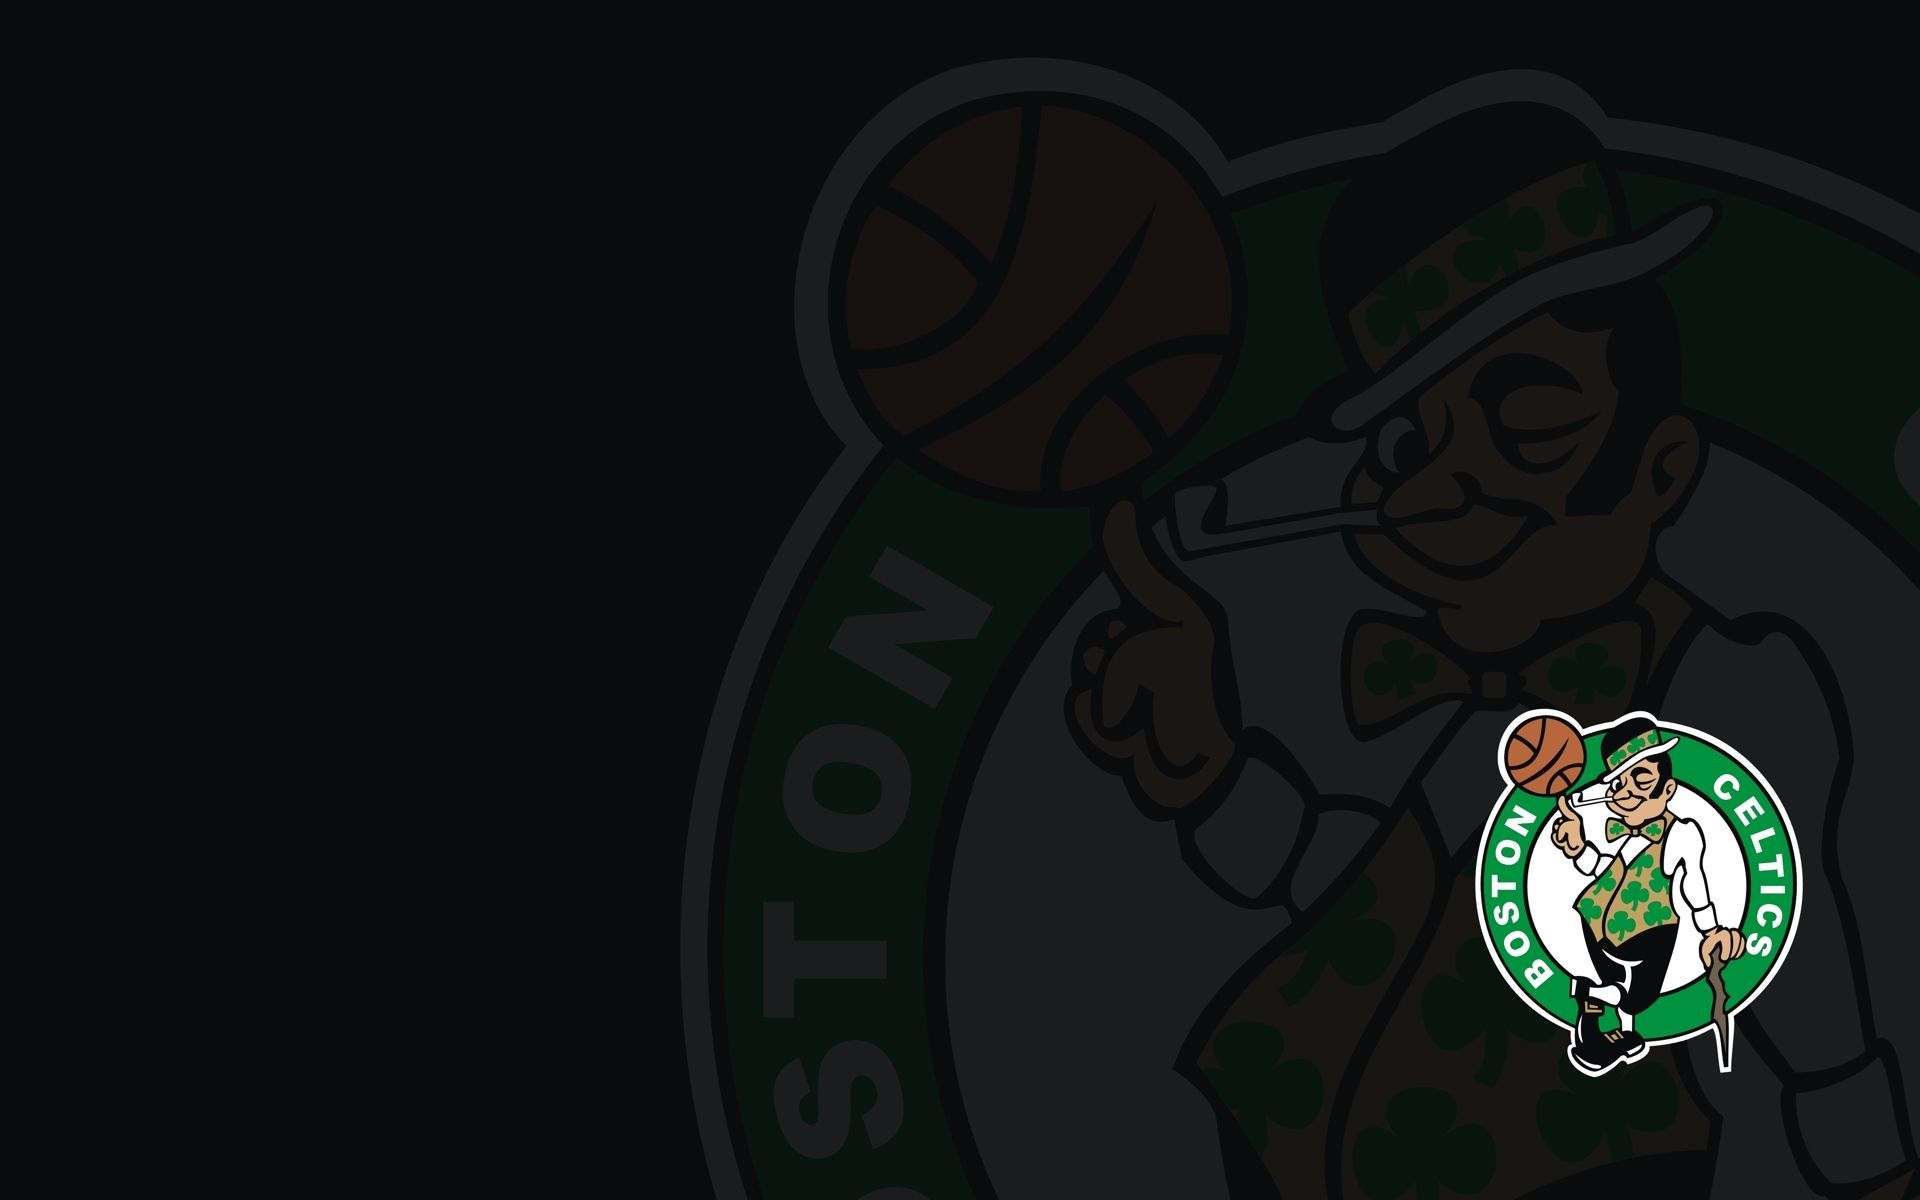 Celtics Wallapaper Wallpapers